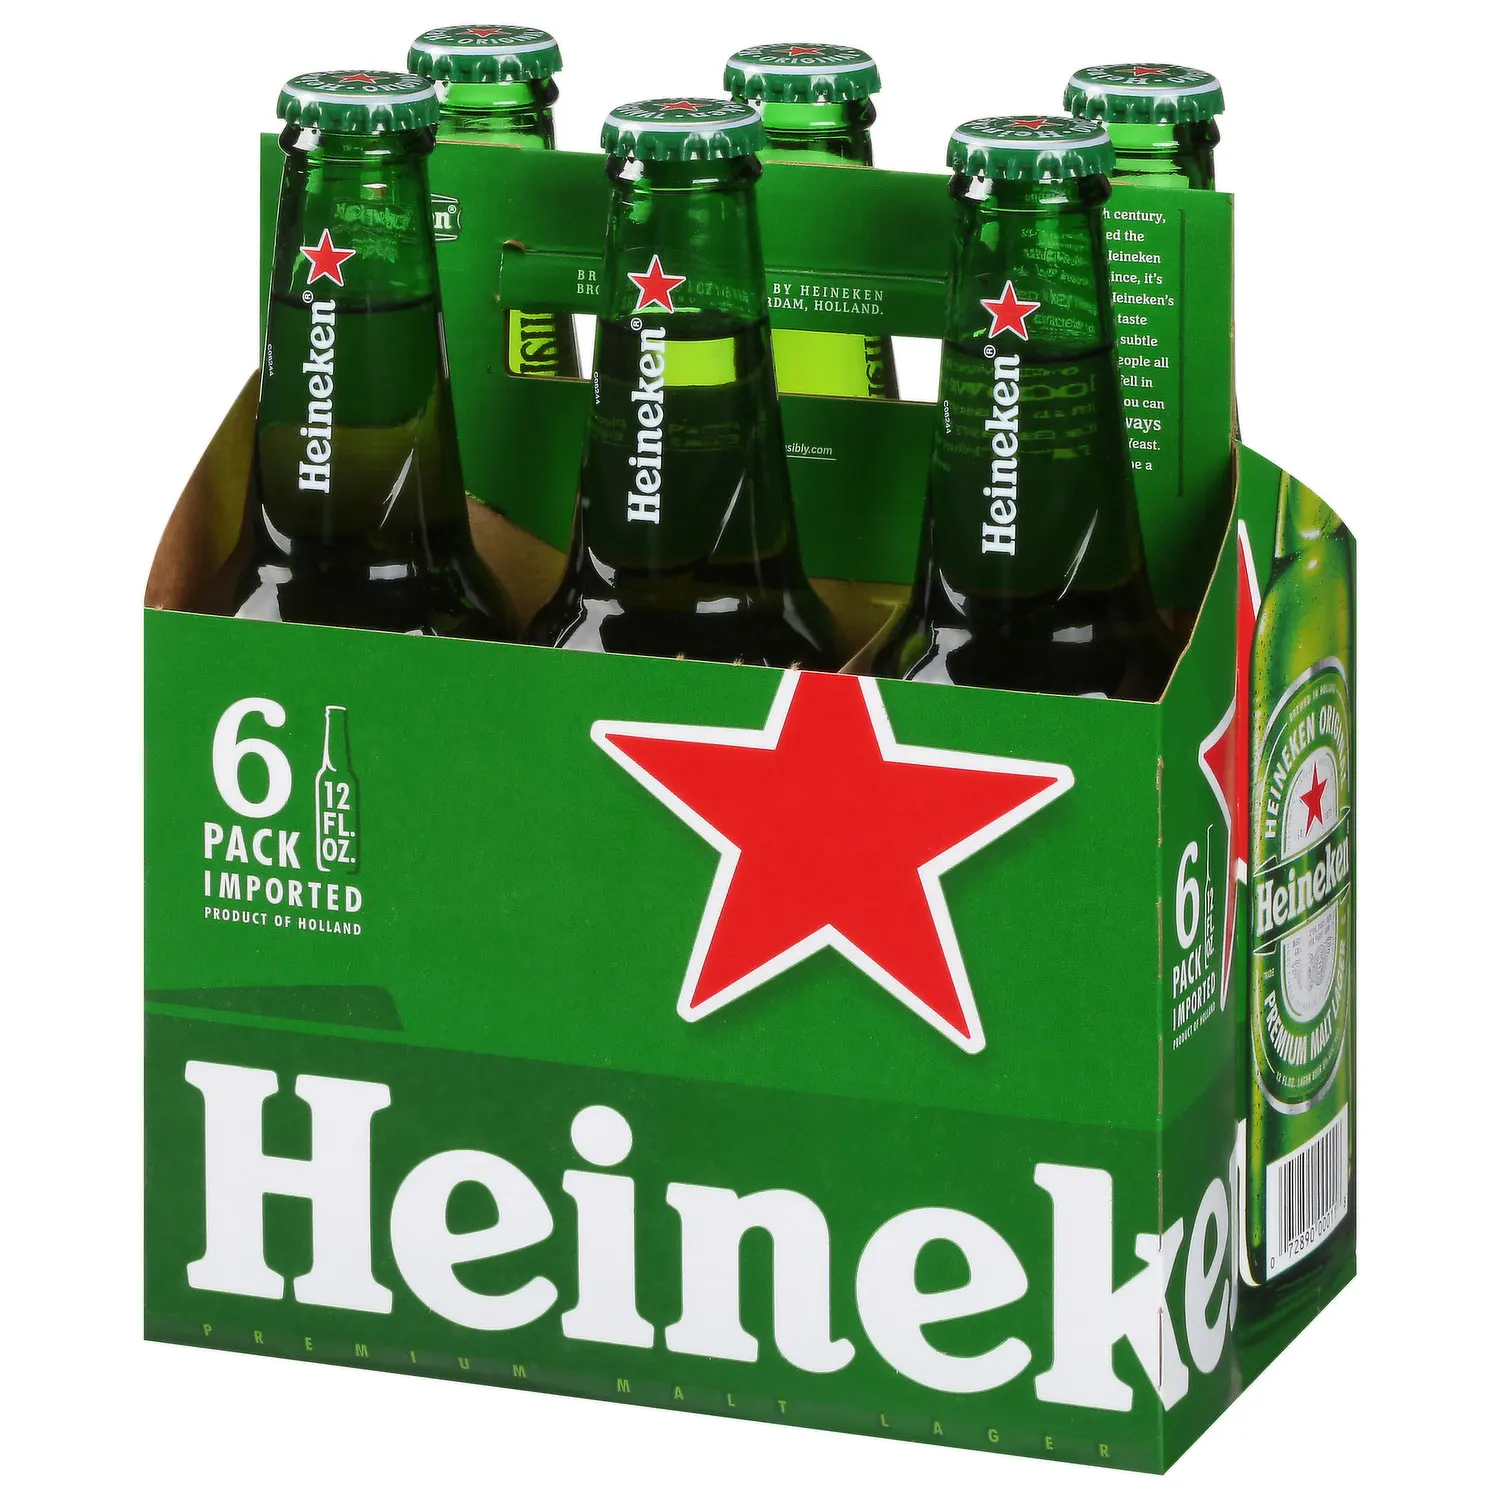 Heineken Original Lager Beer, 6 Pack, 12 fl oz Bottles, 5% Alcohol